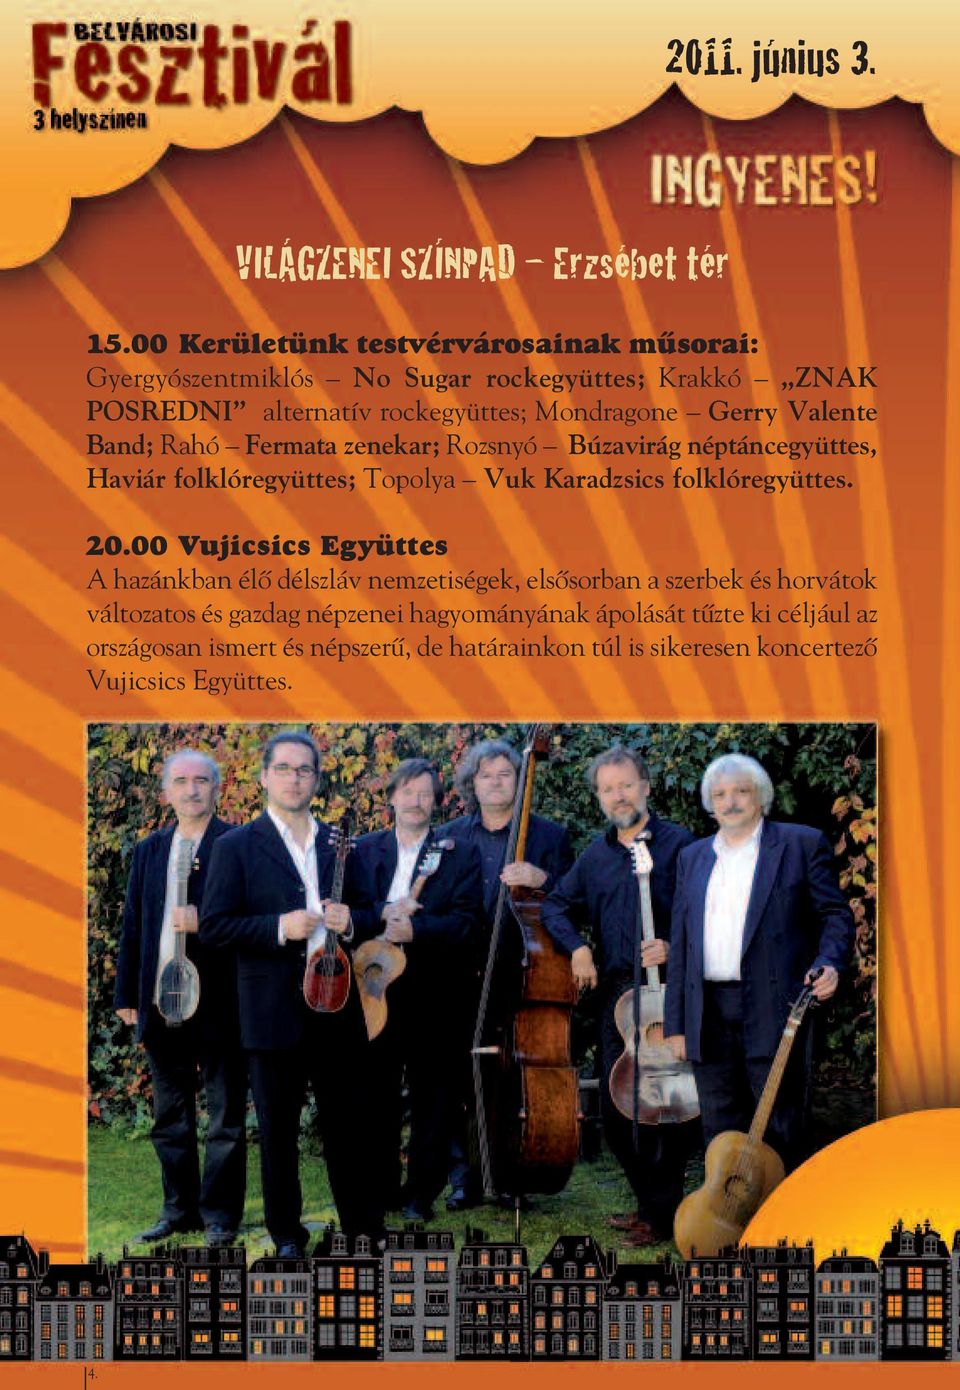 Valente Band; Rahó Fermata zenekar; Rozsnyó Búzavirág néptáncegyüttes, Haviár folklóregyüttes; Topolya Vuk Karadzsics folklóregyüttes. 20.